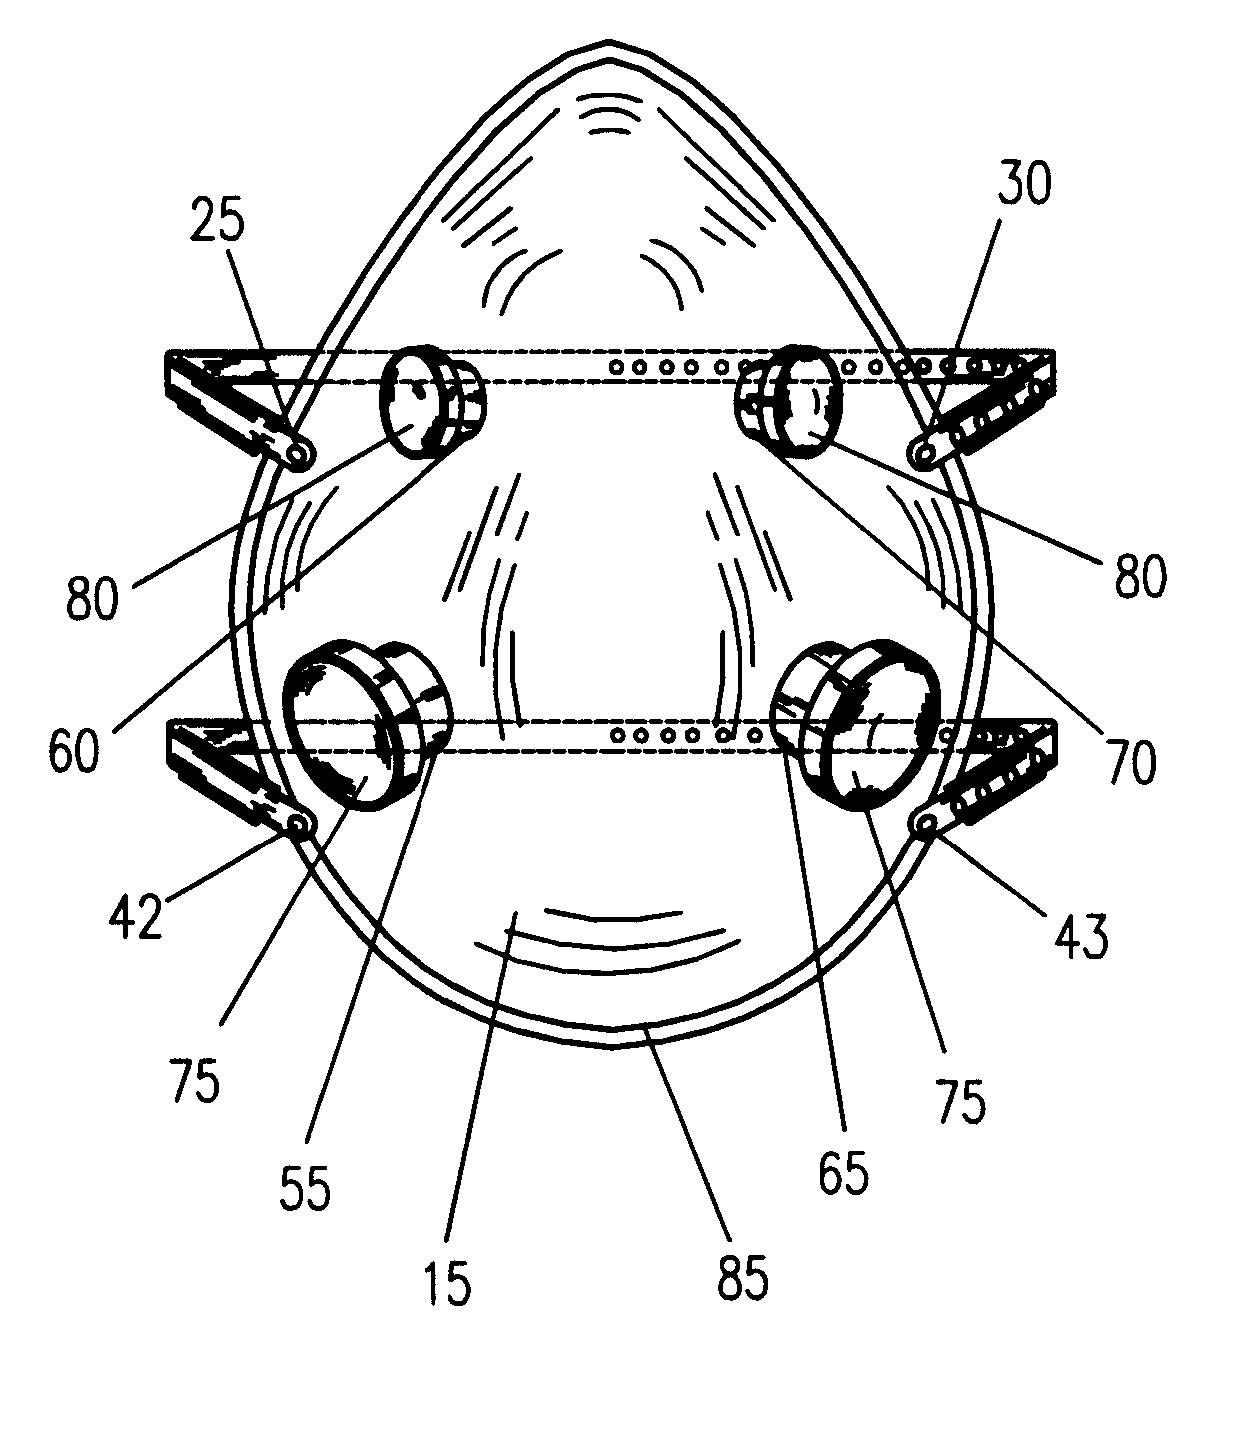 Multi-purpose oxygen face mask